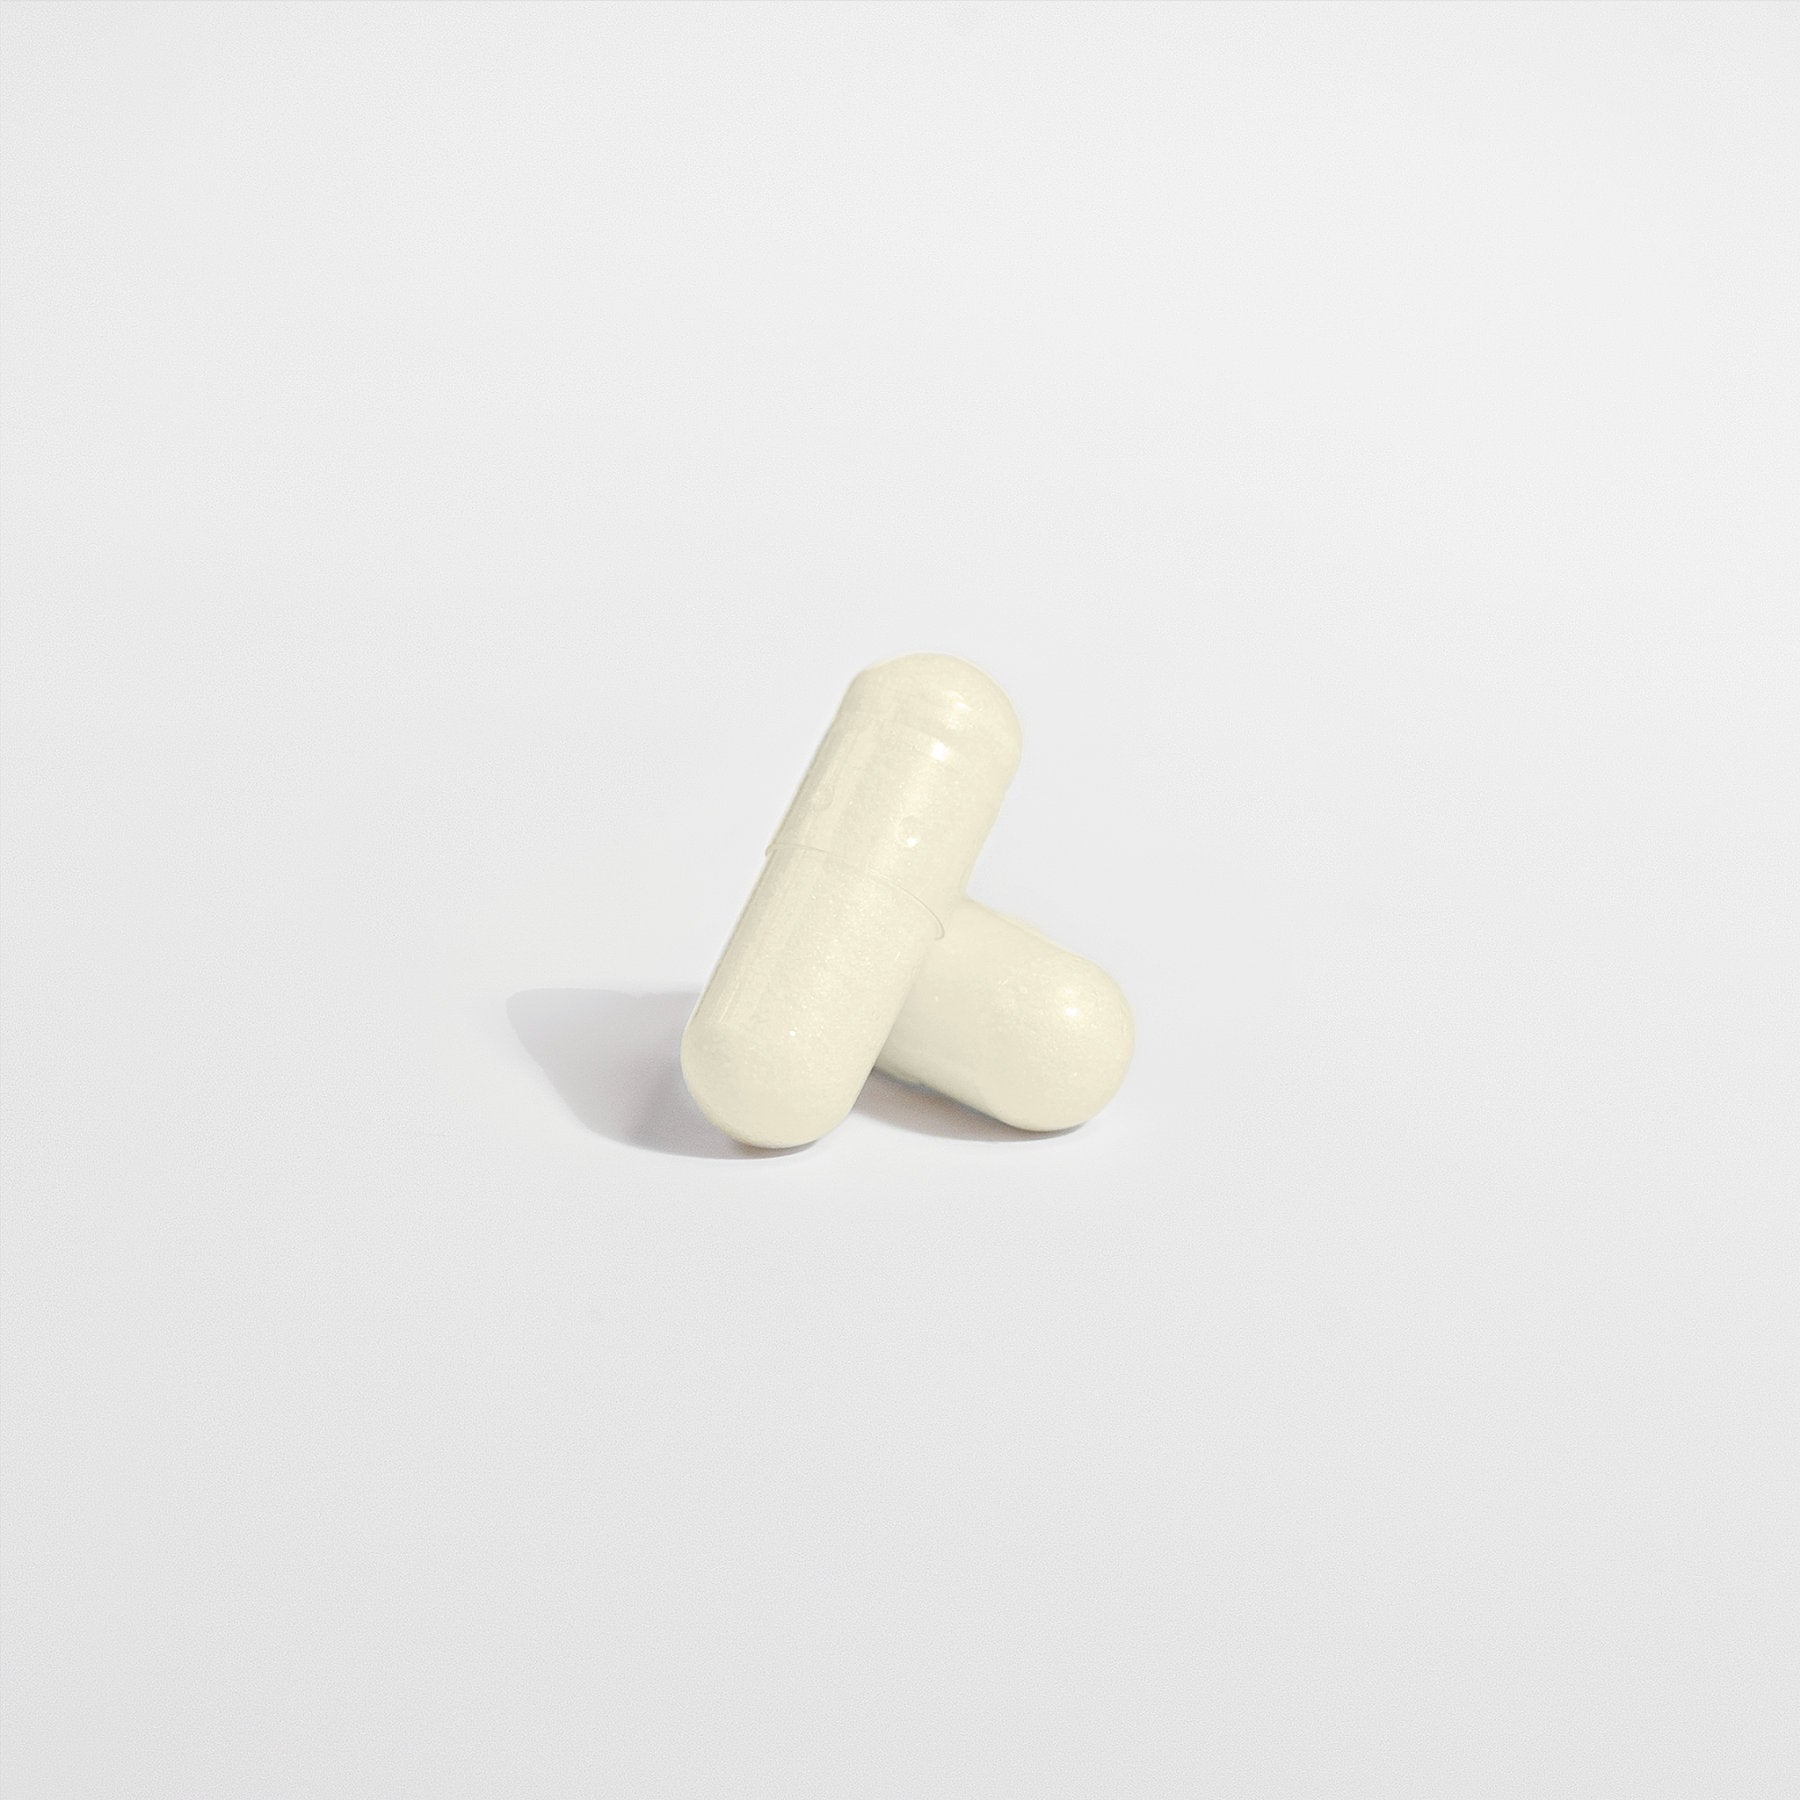 capsules of prodigestive premium probiotics supplement